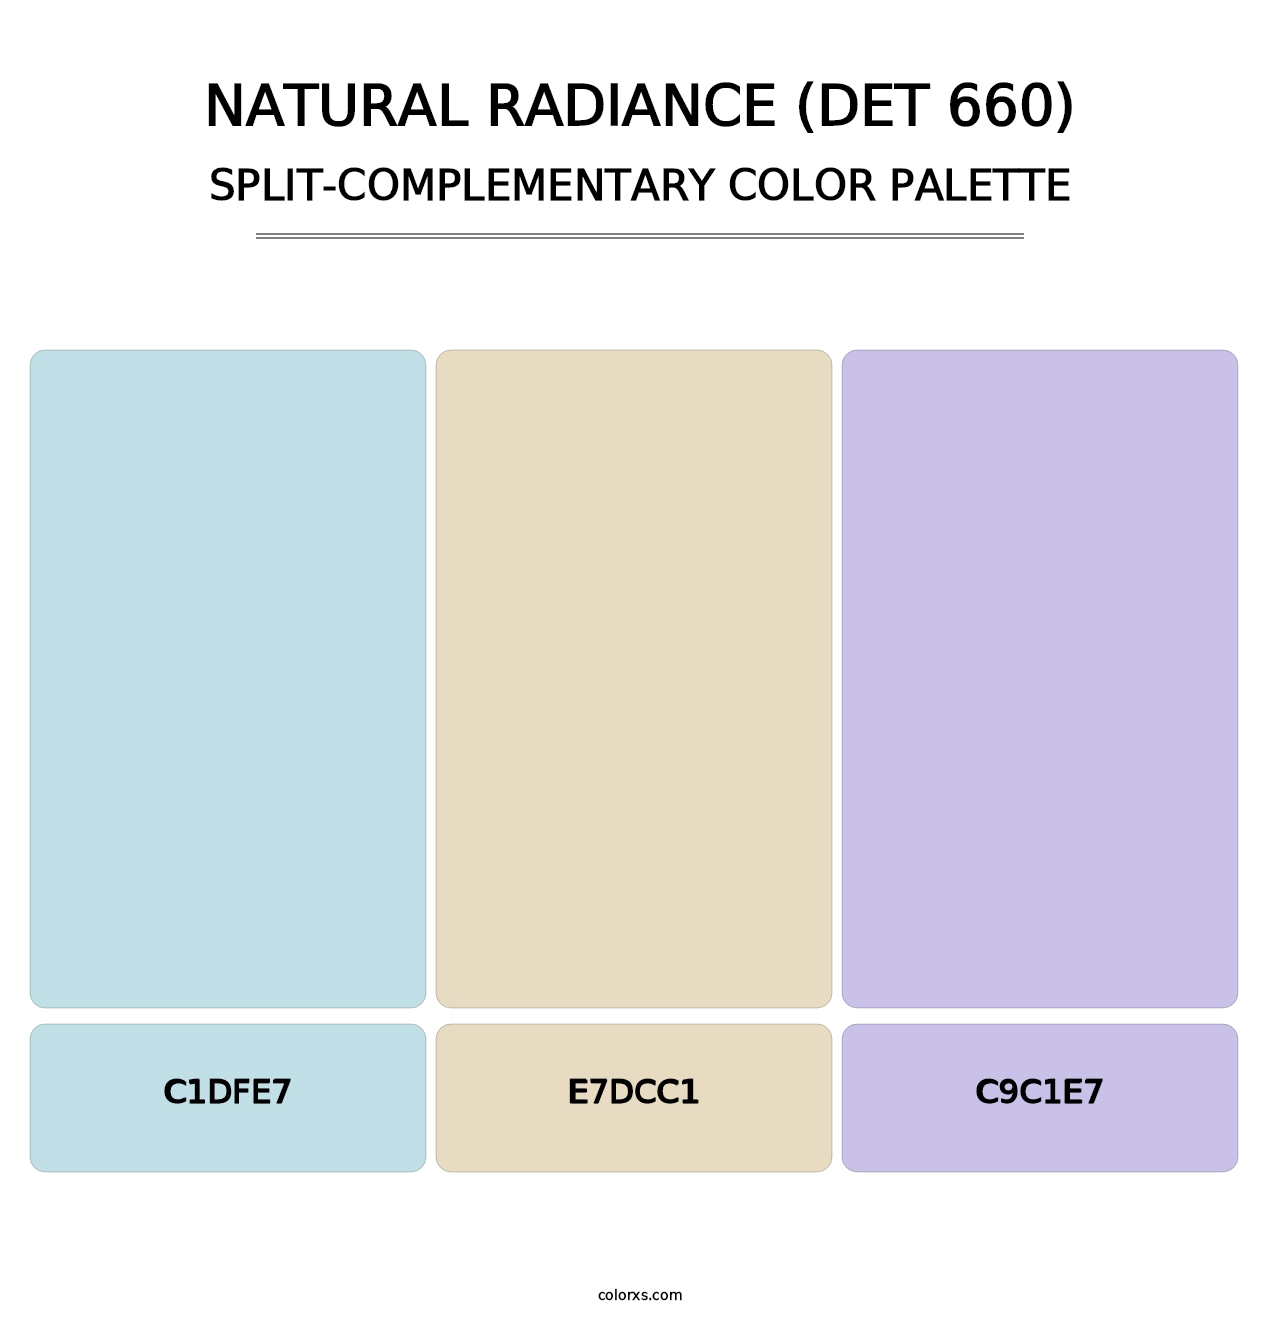 Natural Radiance (DET 660) - Split-Complementary Color Palette